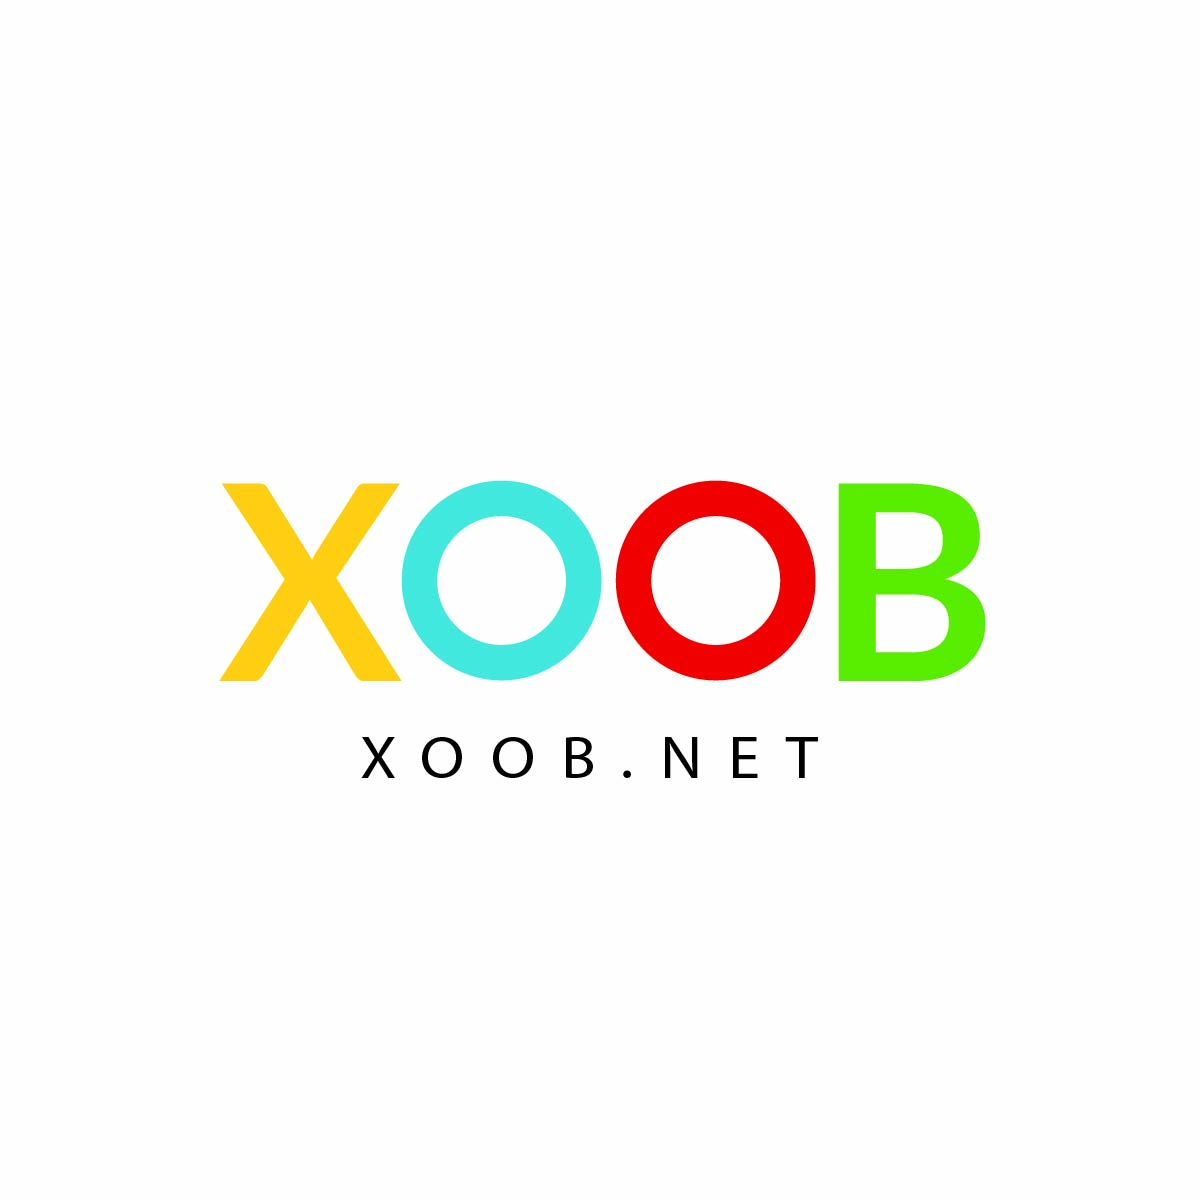 Xoob.net Branding Design